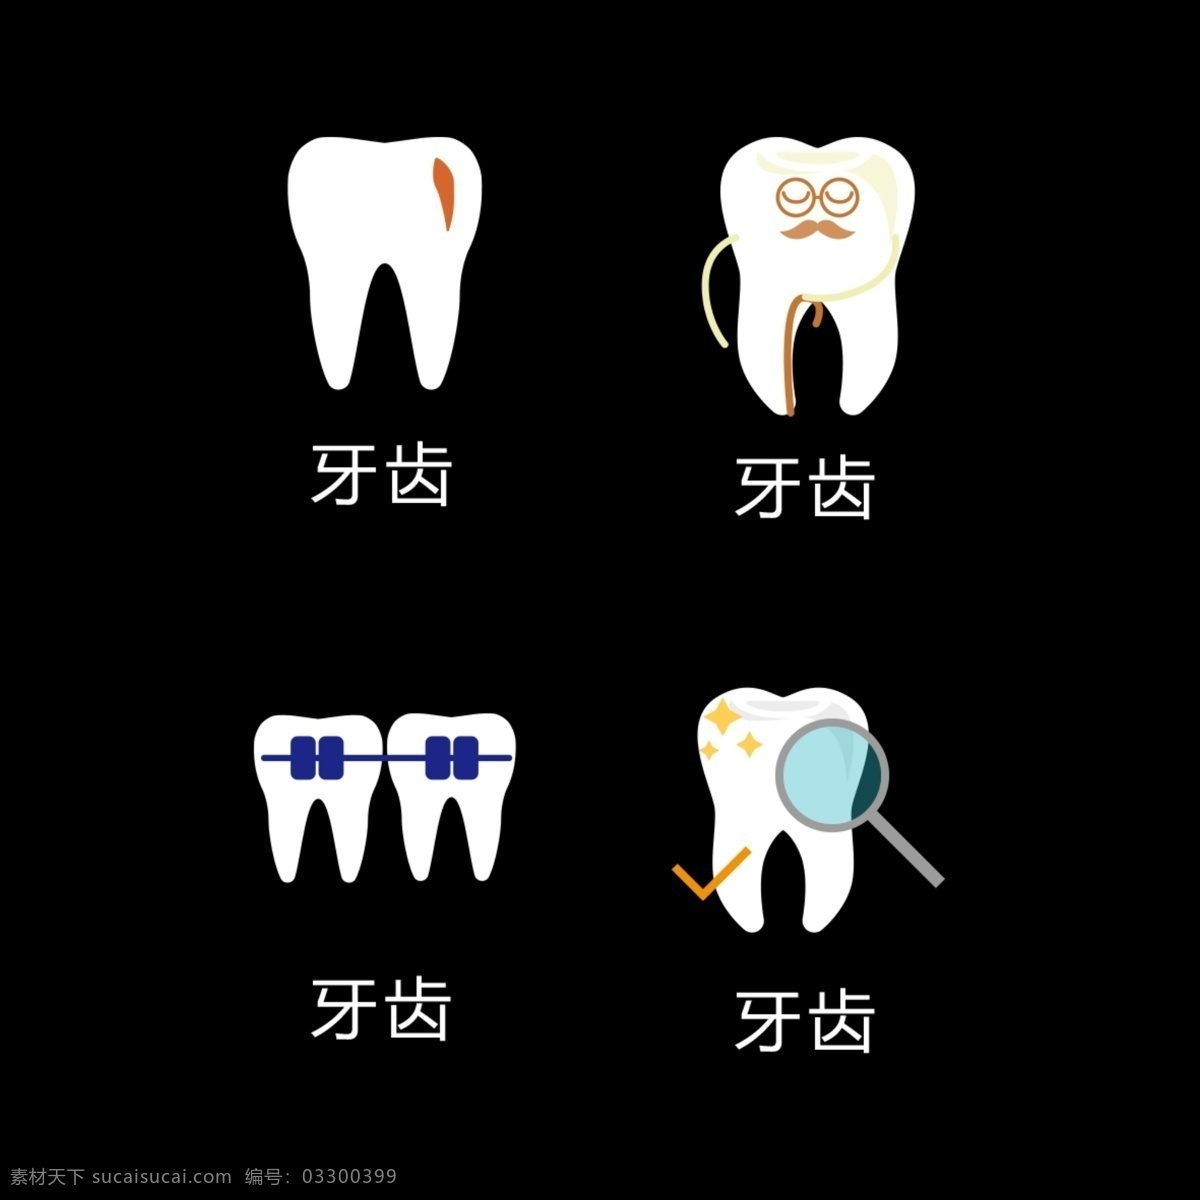 牙齿海报 牙齿 卡通牙齿 补牙 刷牙 智齿 口腔健康 牙齿美容 牙科 蛀牙 牙齿健康